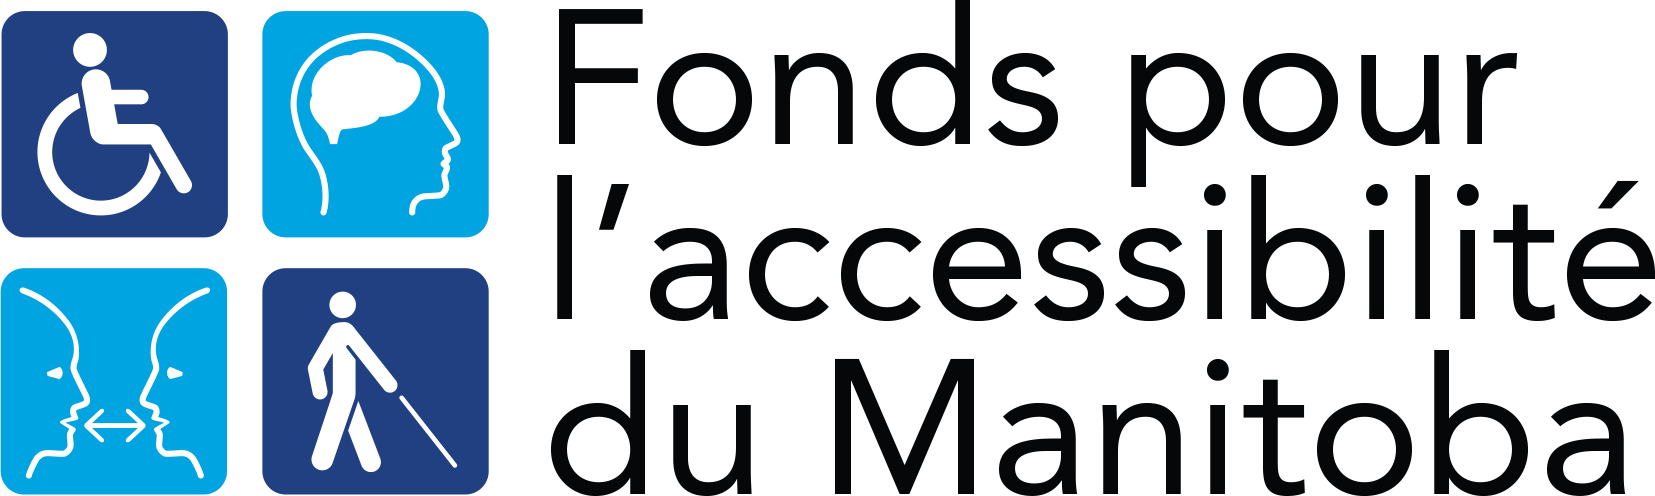 Logo du Fonds pour l'accessibilité du Manitoba - comprend un graphique d'une personne en fauteuil roulant, la tête et le cerveau d'une personne, deux personnes qui parlent et une personne aveugle qui marche.